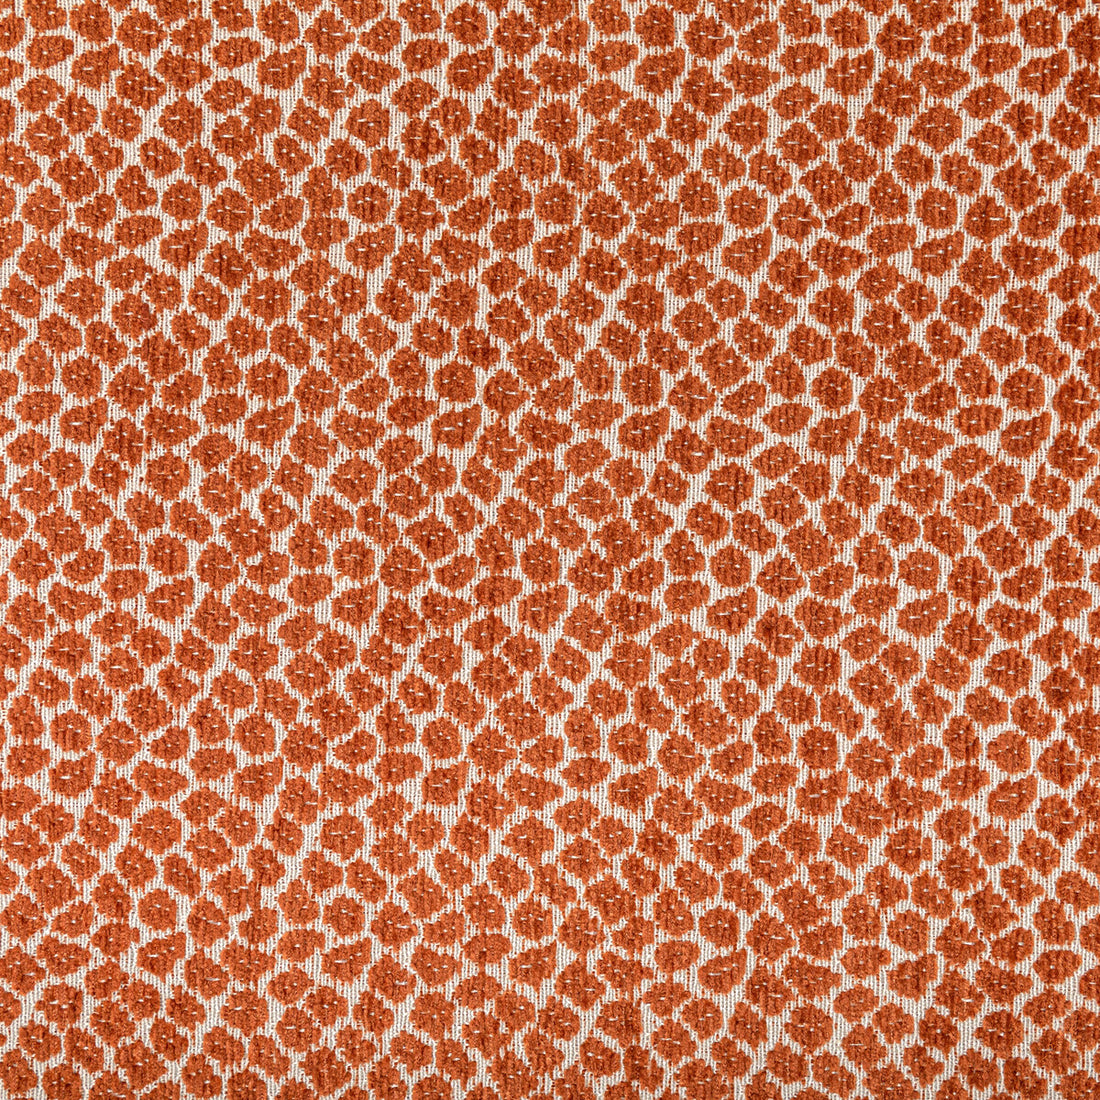 Kravet Design fabric in 36753-12 color - pattern 36753.12.0 - by Kravet Design